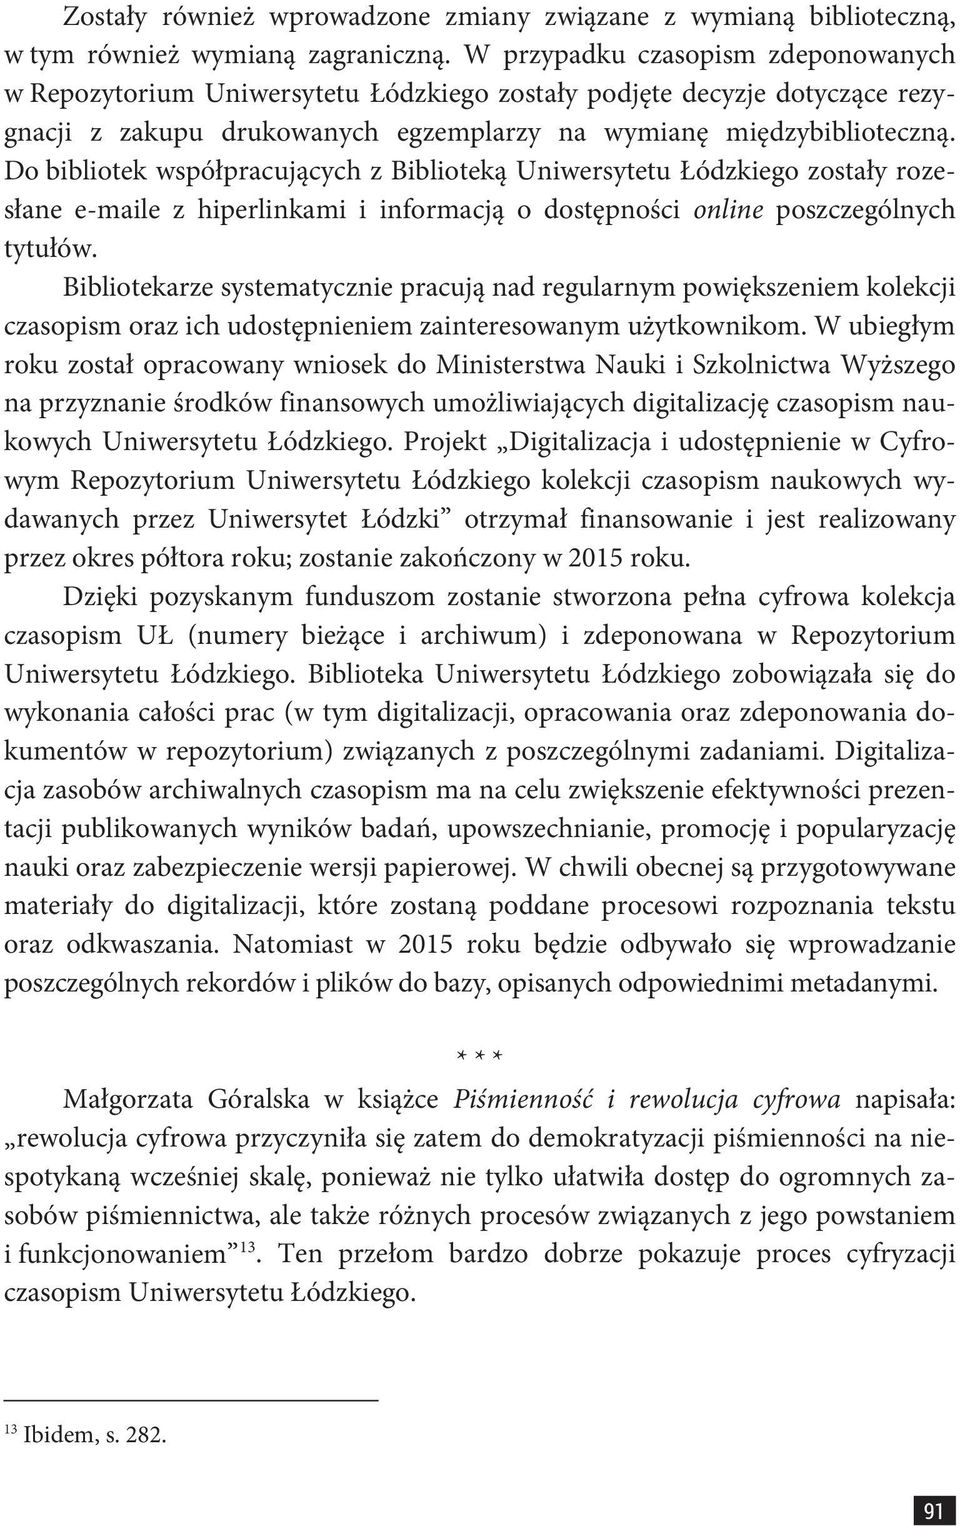 Do bibliotek współpracujących z Biblioteką Uniwersytetu Łódzkiego zostały rozesłane e-maile z hiperlinkami i informacją o dostępności online poszczególnych tytułów.